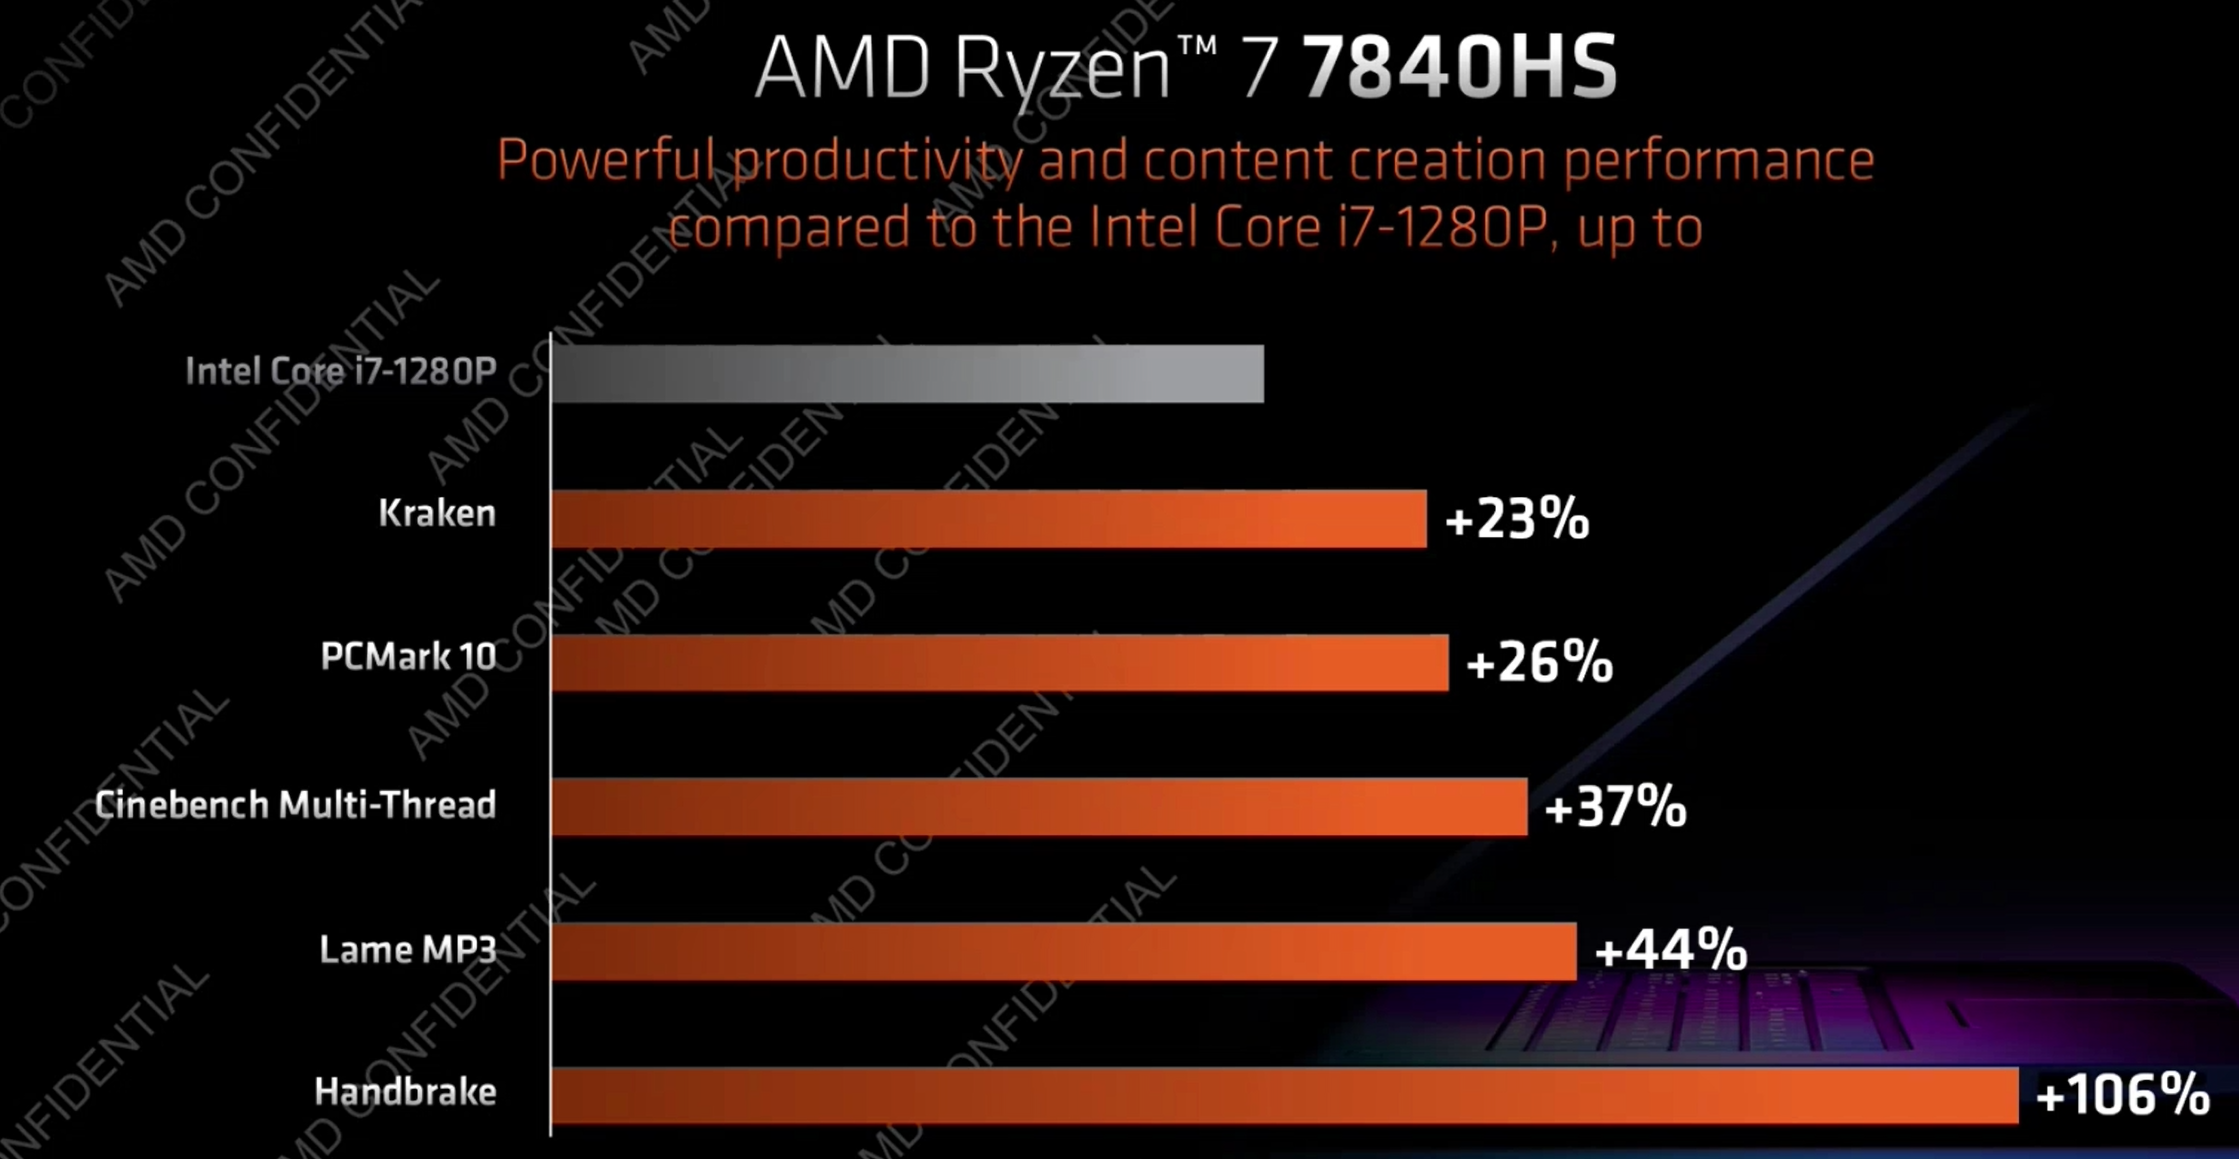 AMD Ryzen 7 7840hs mobil termelékenység